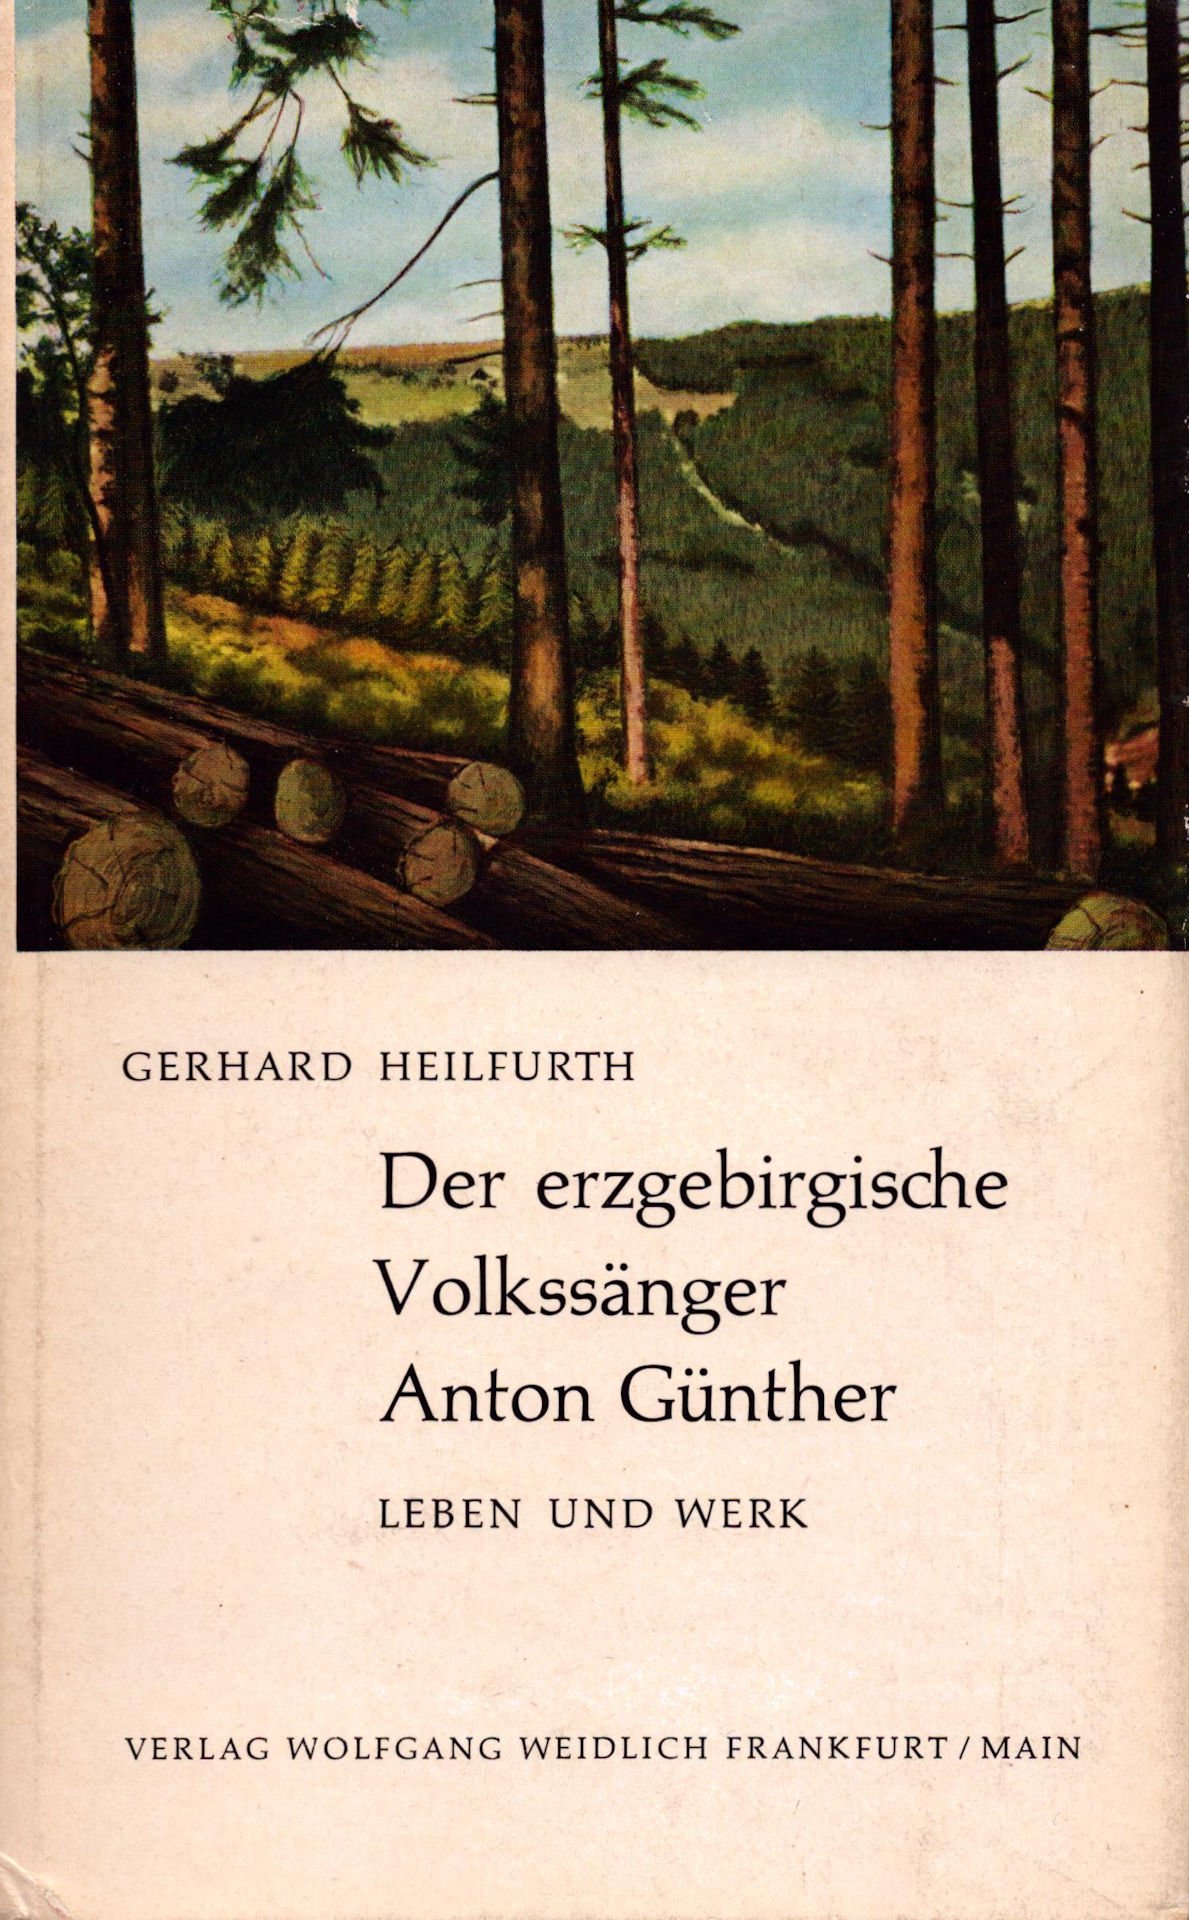 Originaltitel: Der erzgebirgische Volkssänger Anton Günther; Untertitel: Leben und Werk (Saxonia-Freiberg-Stiftung CC BY-NC-SA)